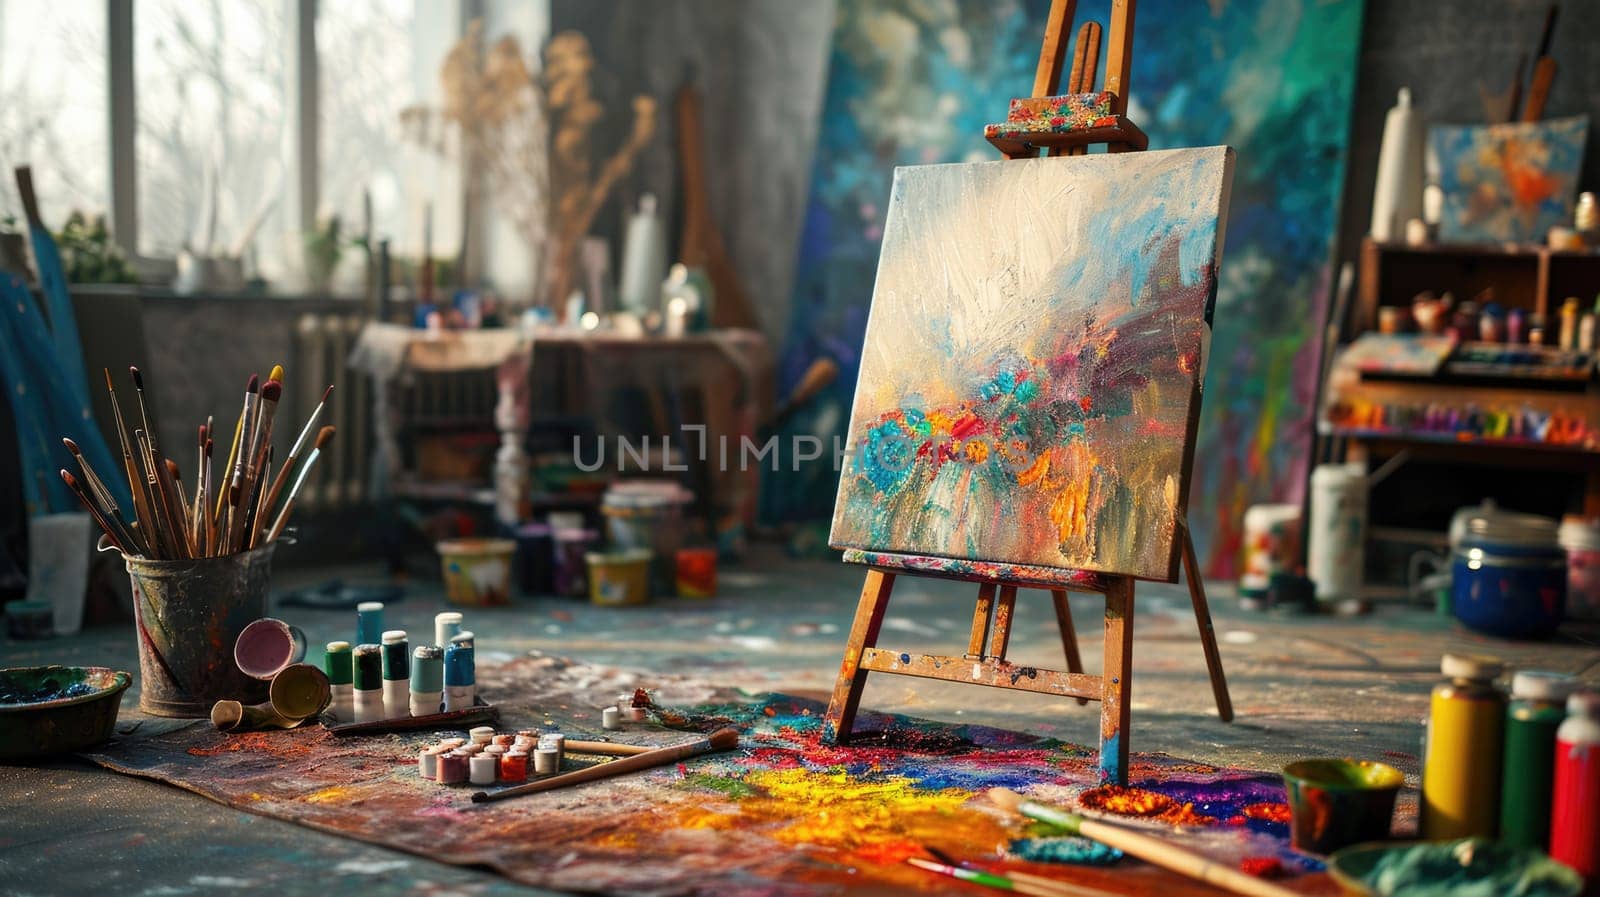 An artist's studio in full creative chaos, paint splattered. Resplendent. by biancoblue